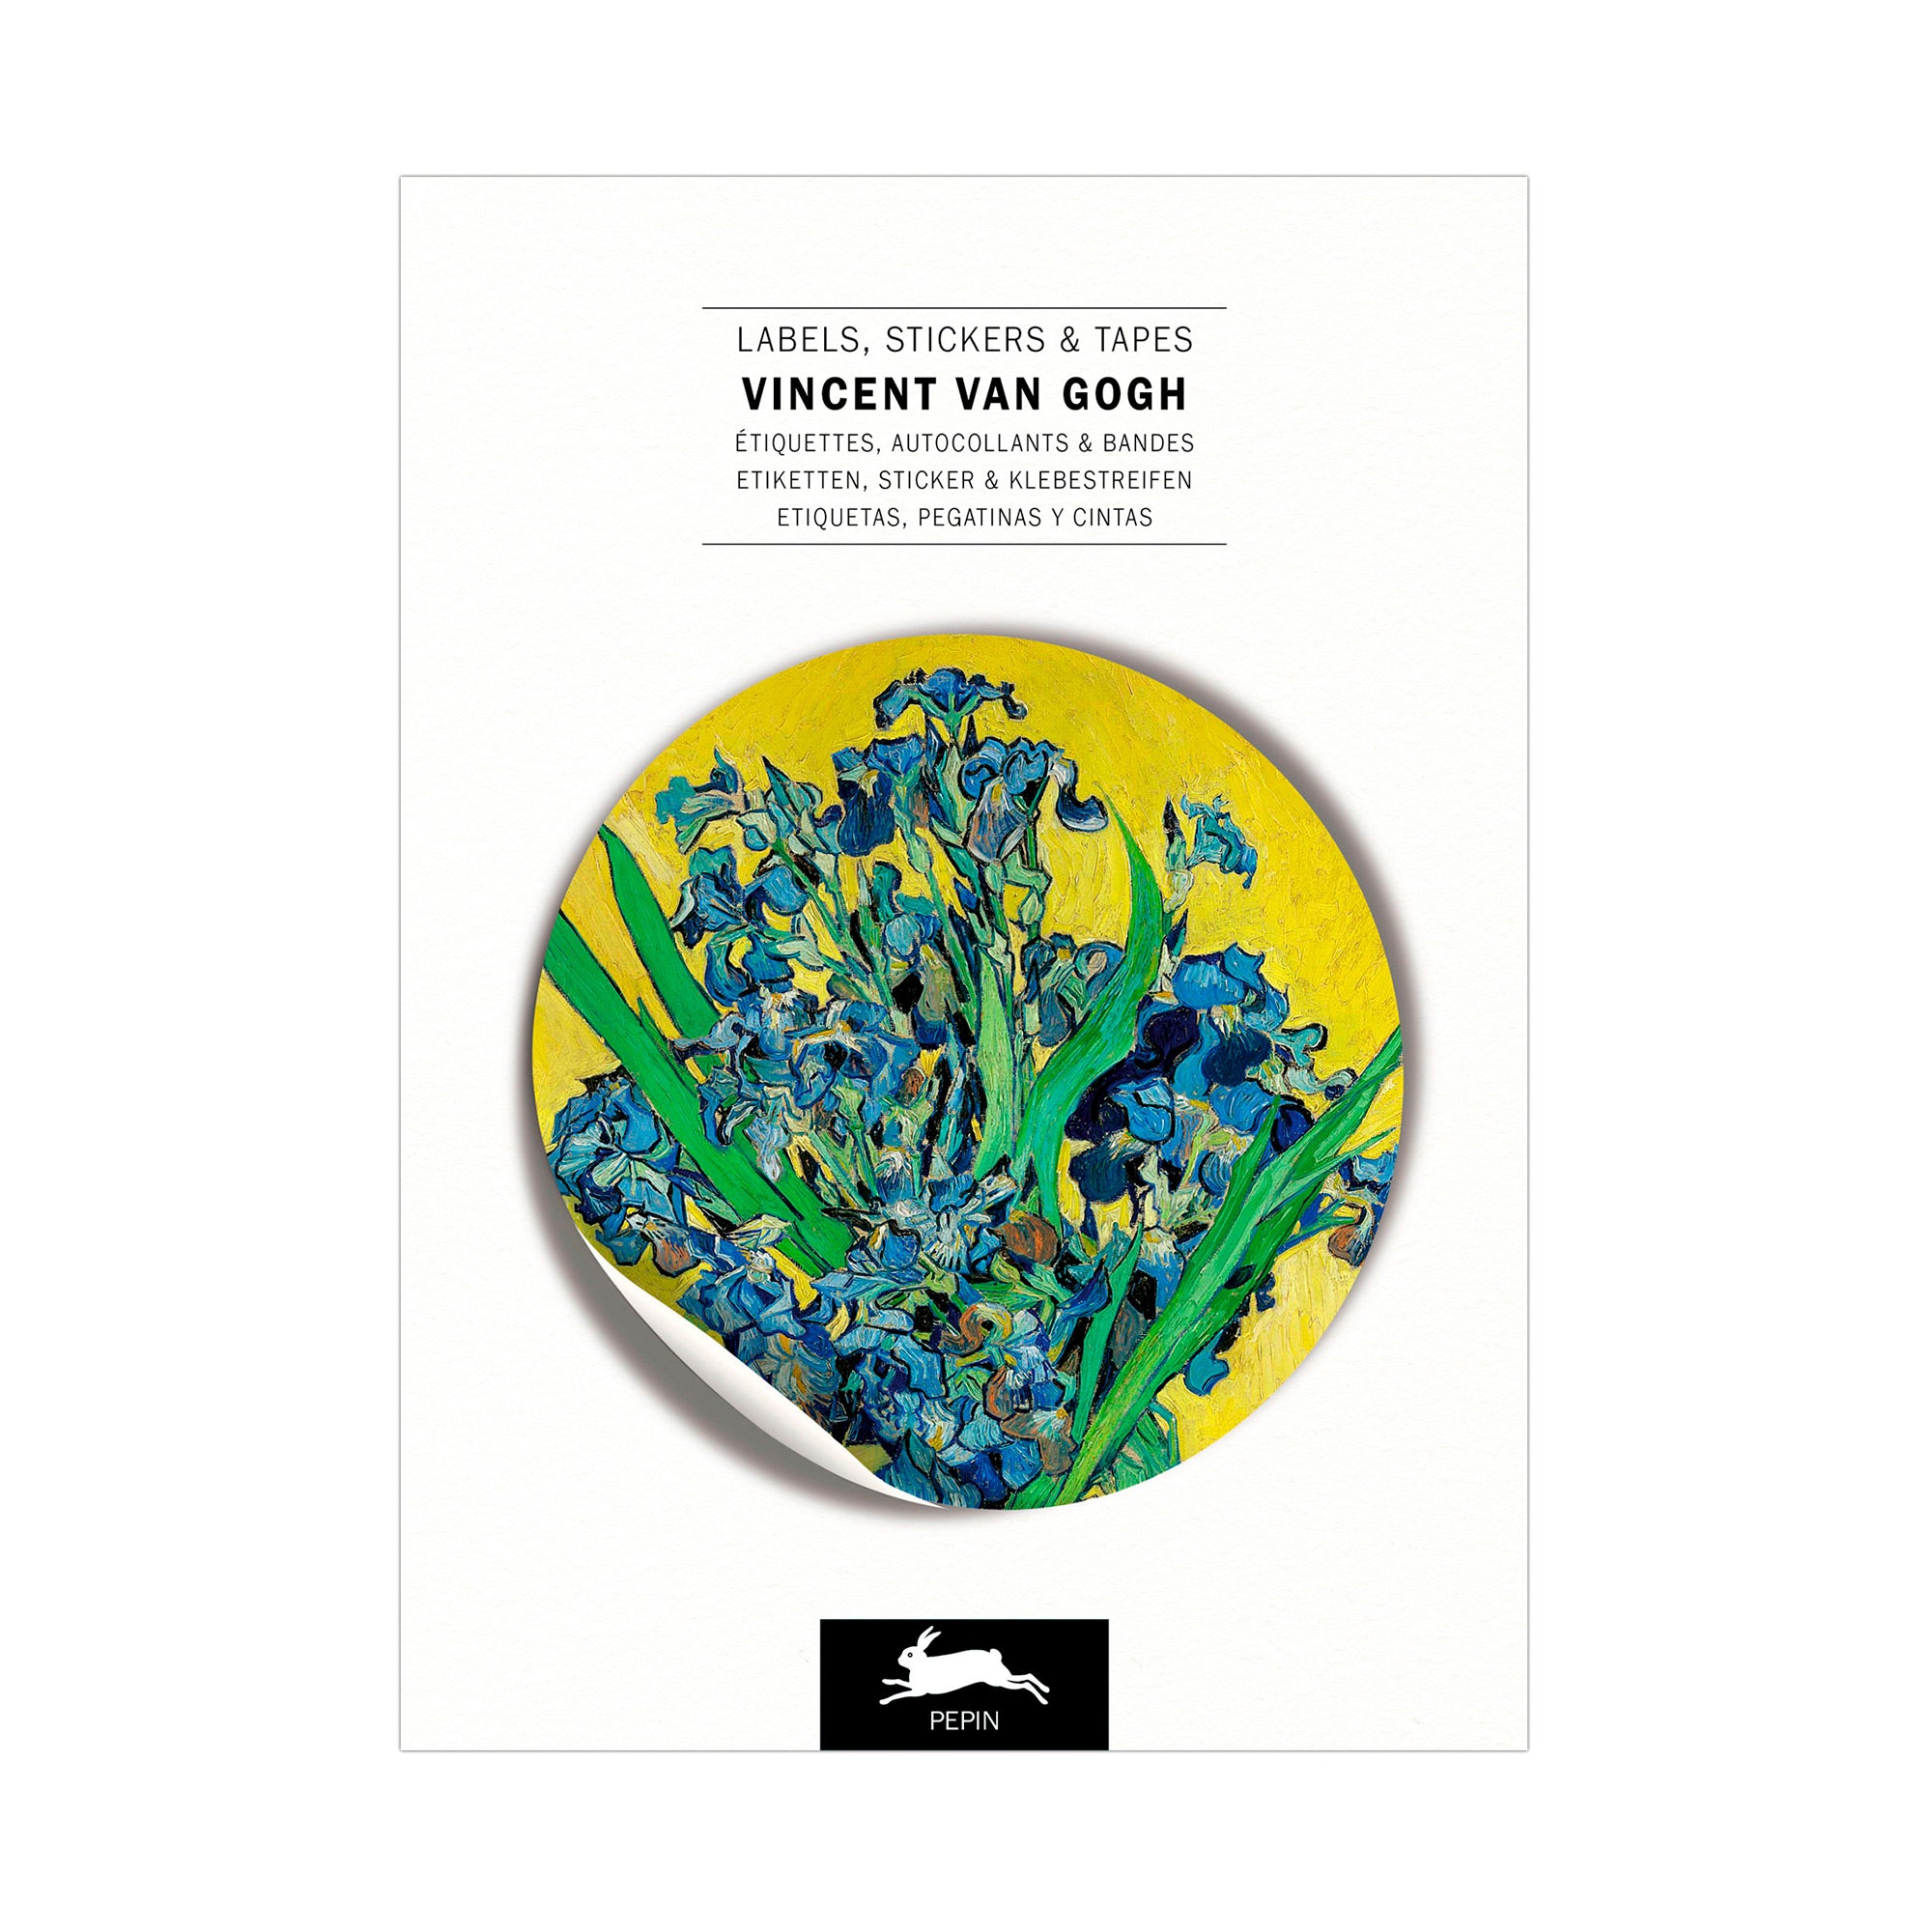 Étiquettes, autocollants & bandes : Vincent van Gogh